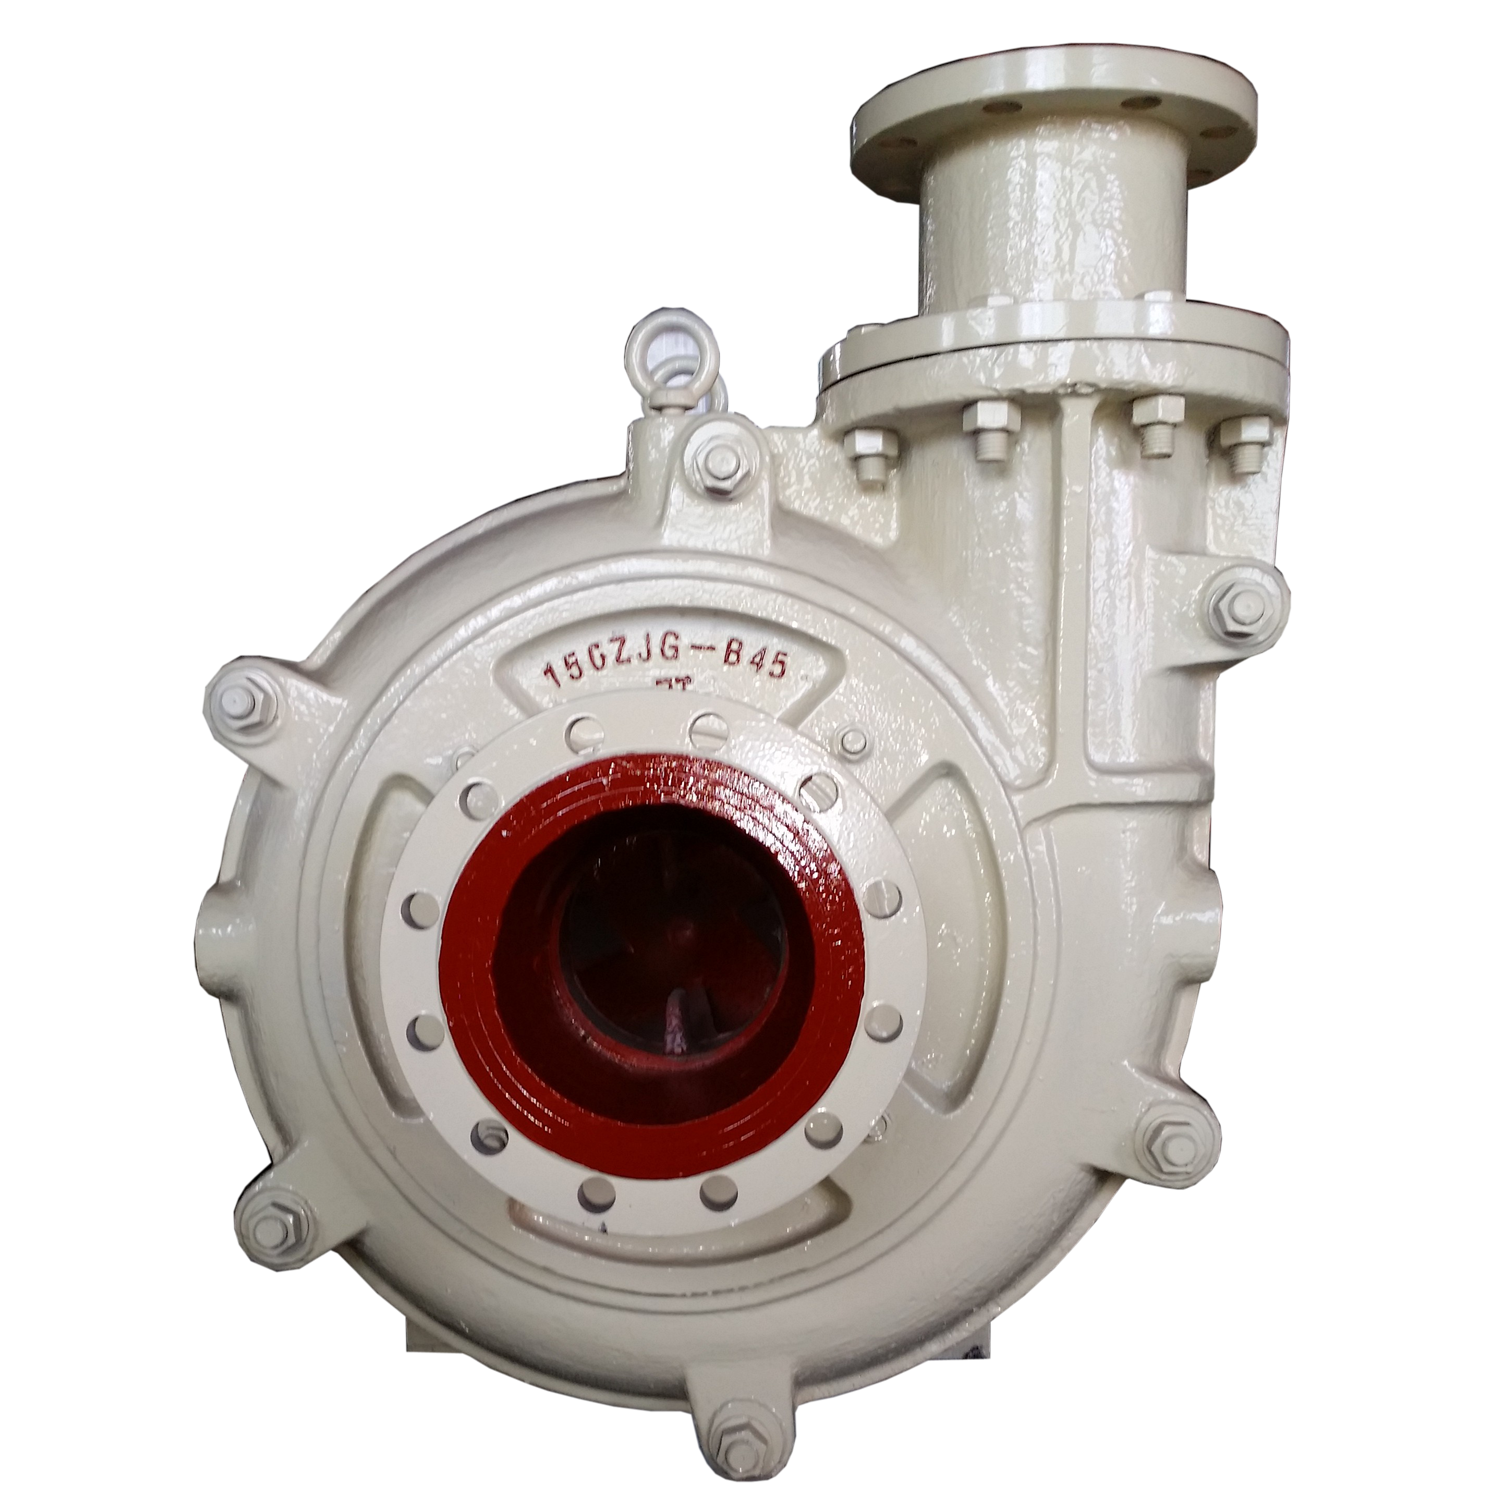 150ZJ-A50 horizontala suspensiaĵo-pumpilo centrifuga Elstara Bildo